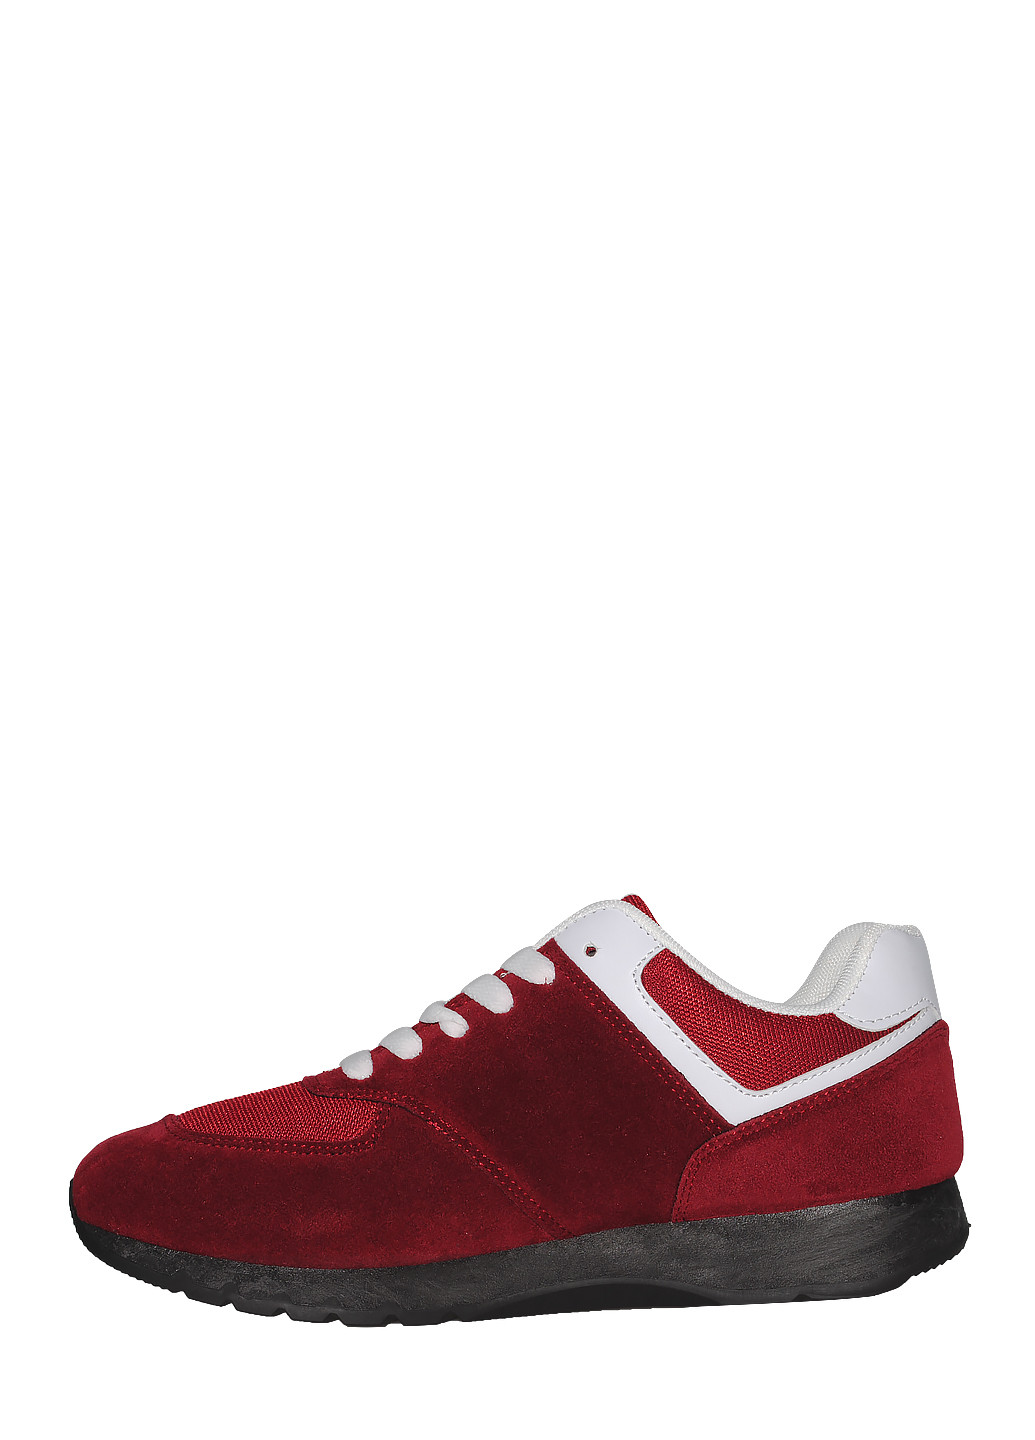 Красные демисезонные кроссовки u4389 red Jomix